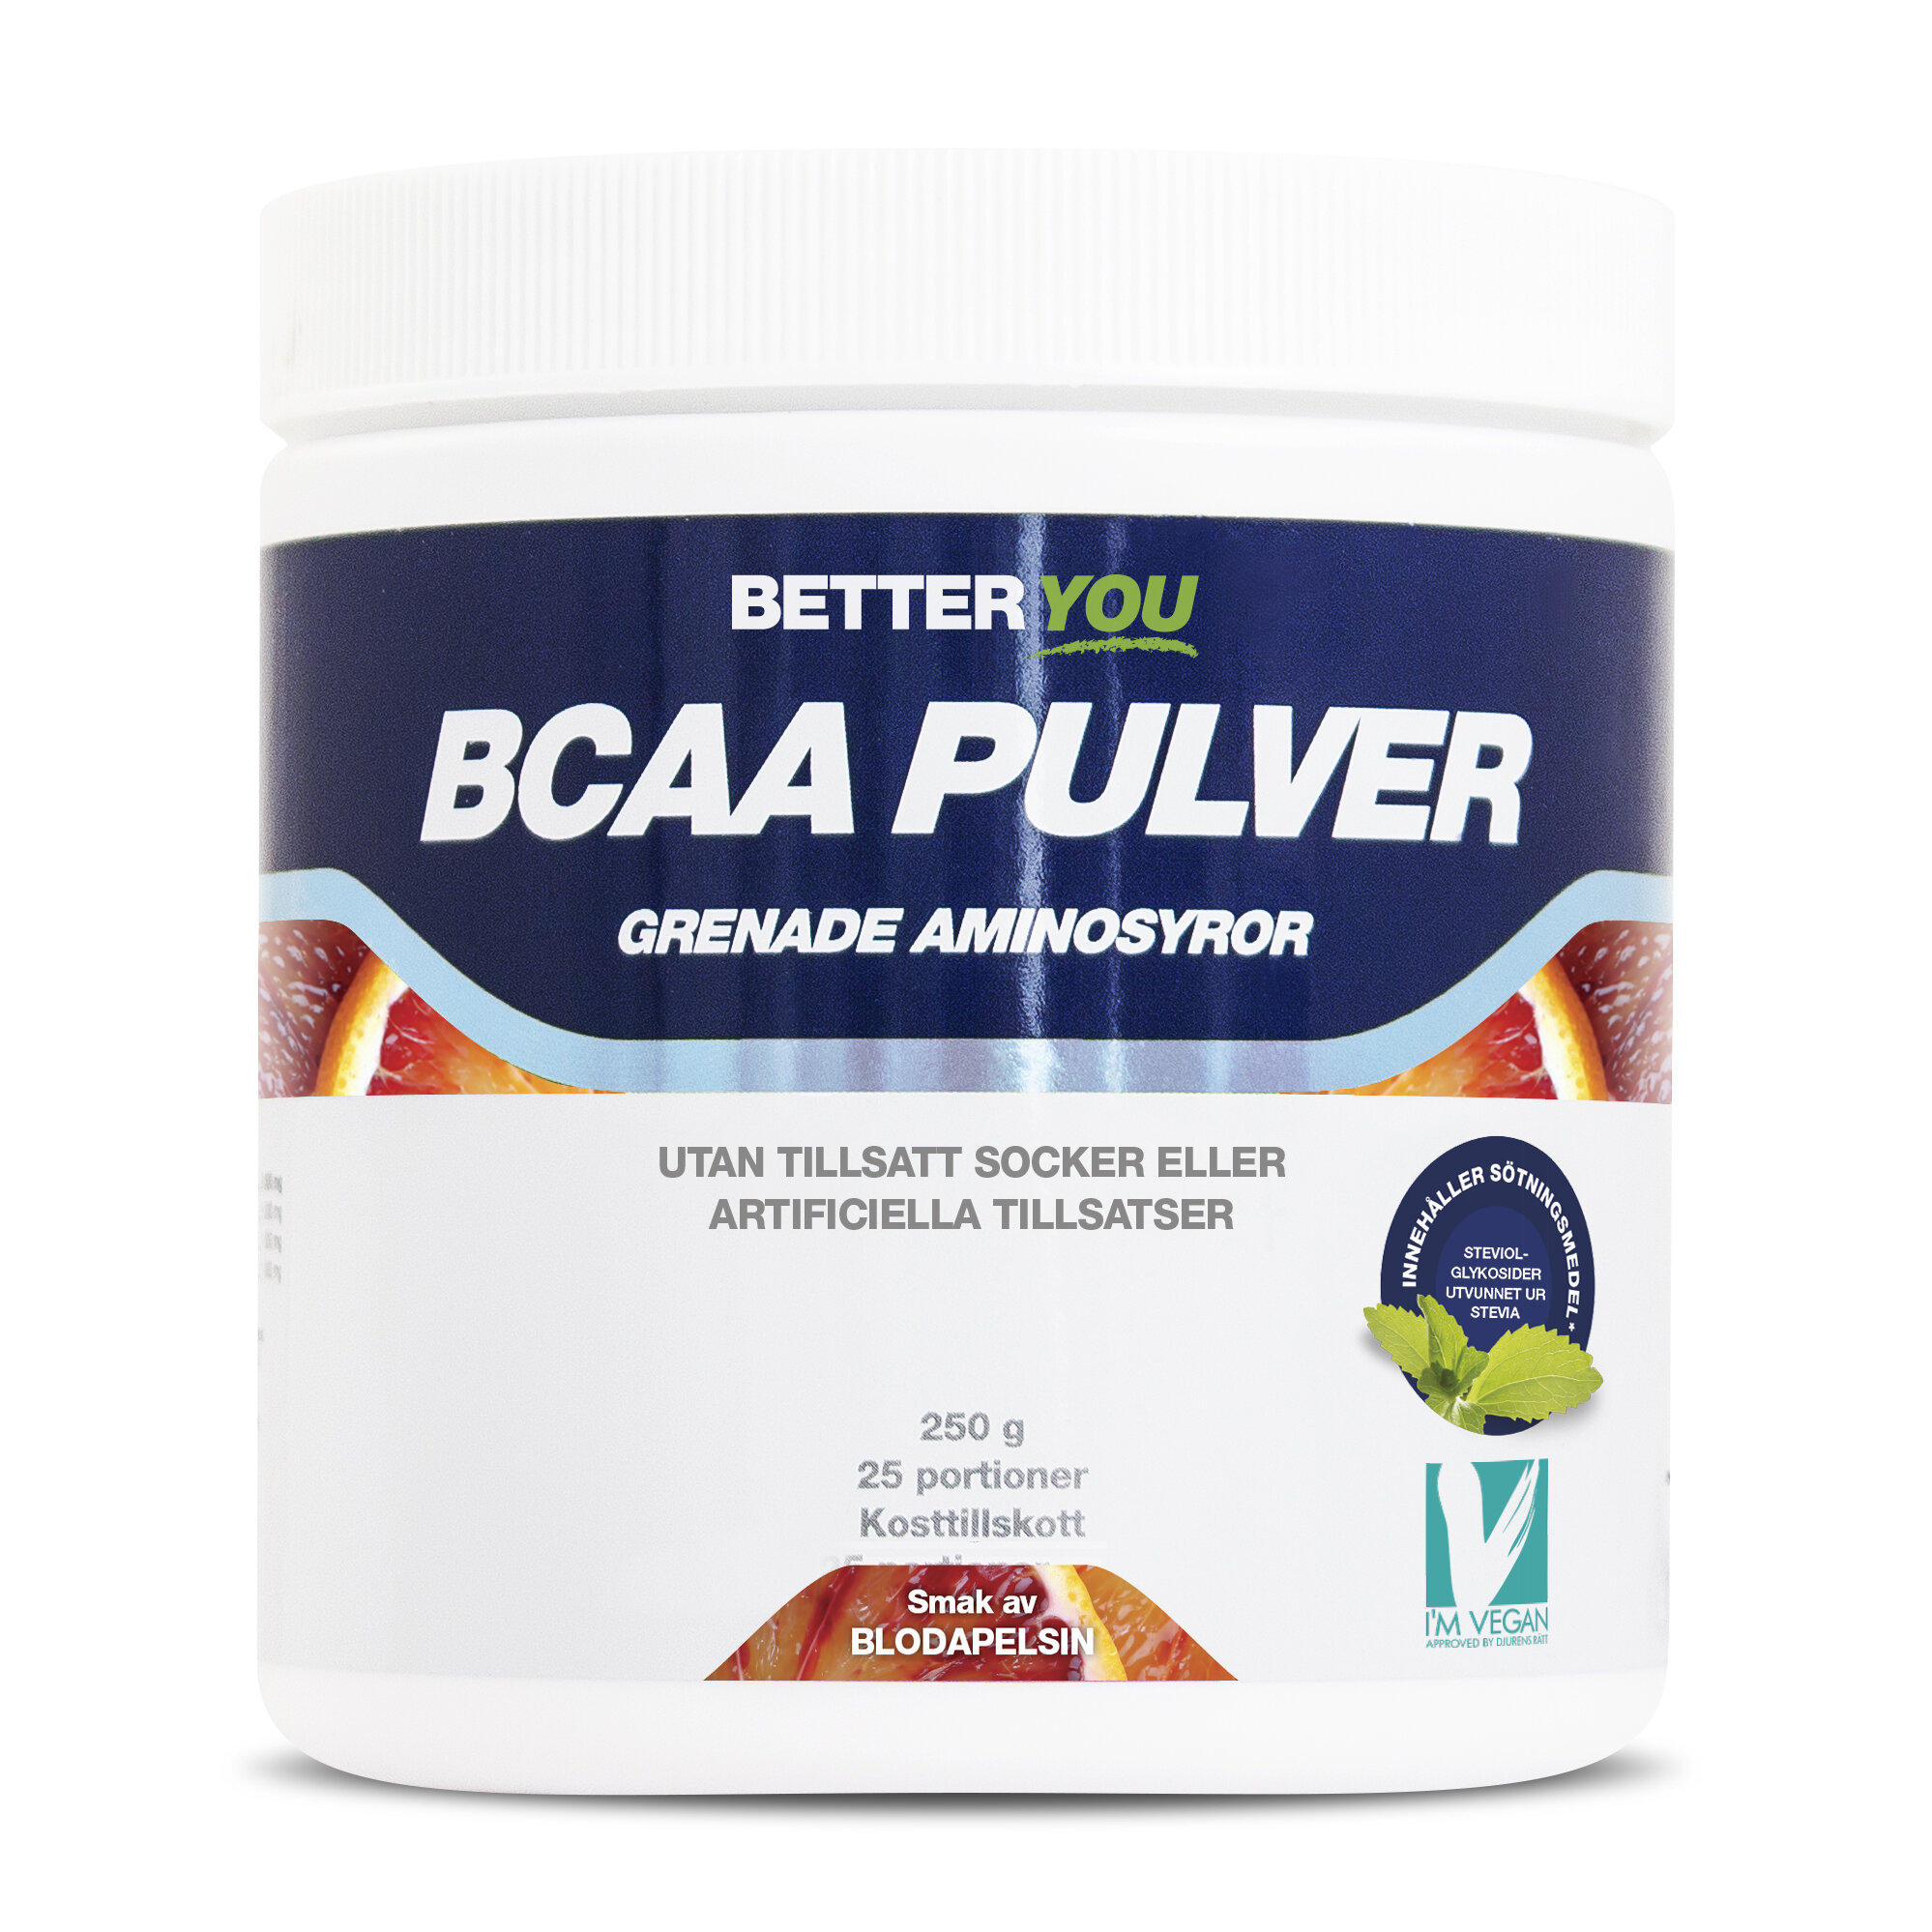 Naturligt BCAA Pulver 250g Blodapelsin